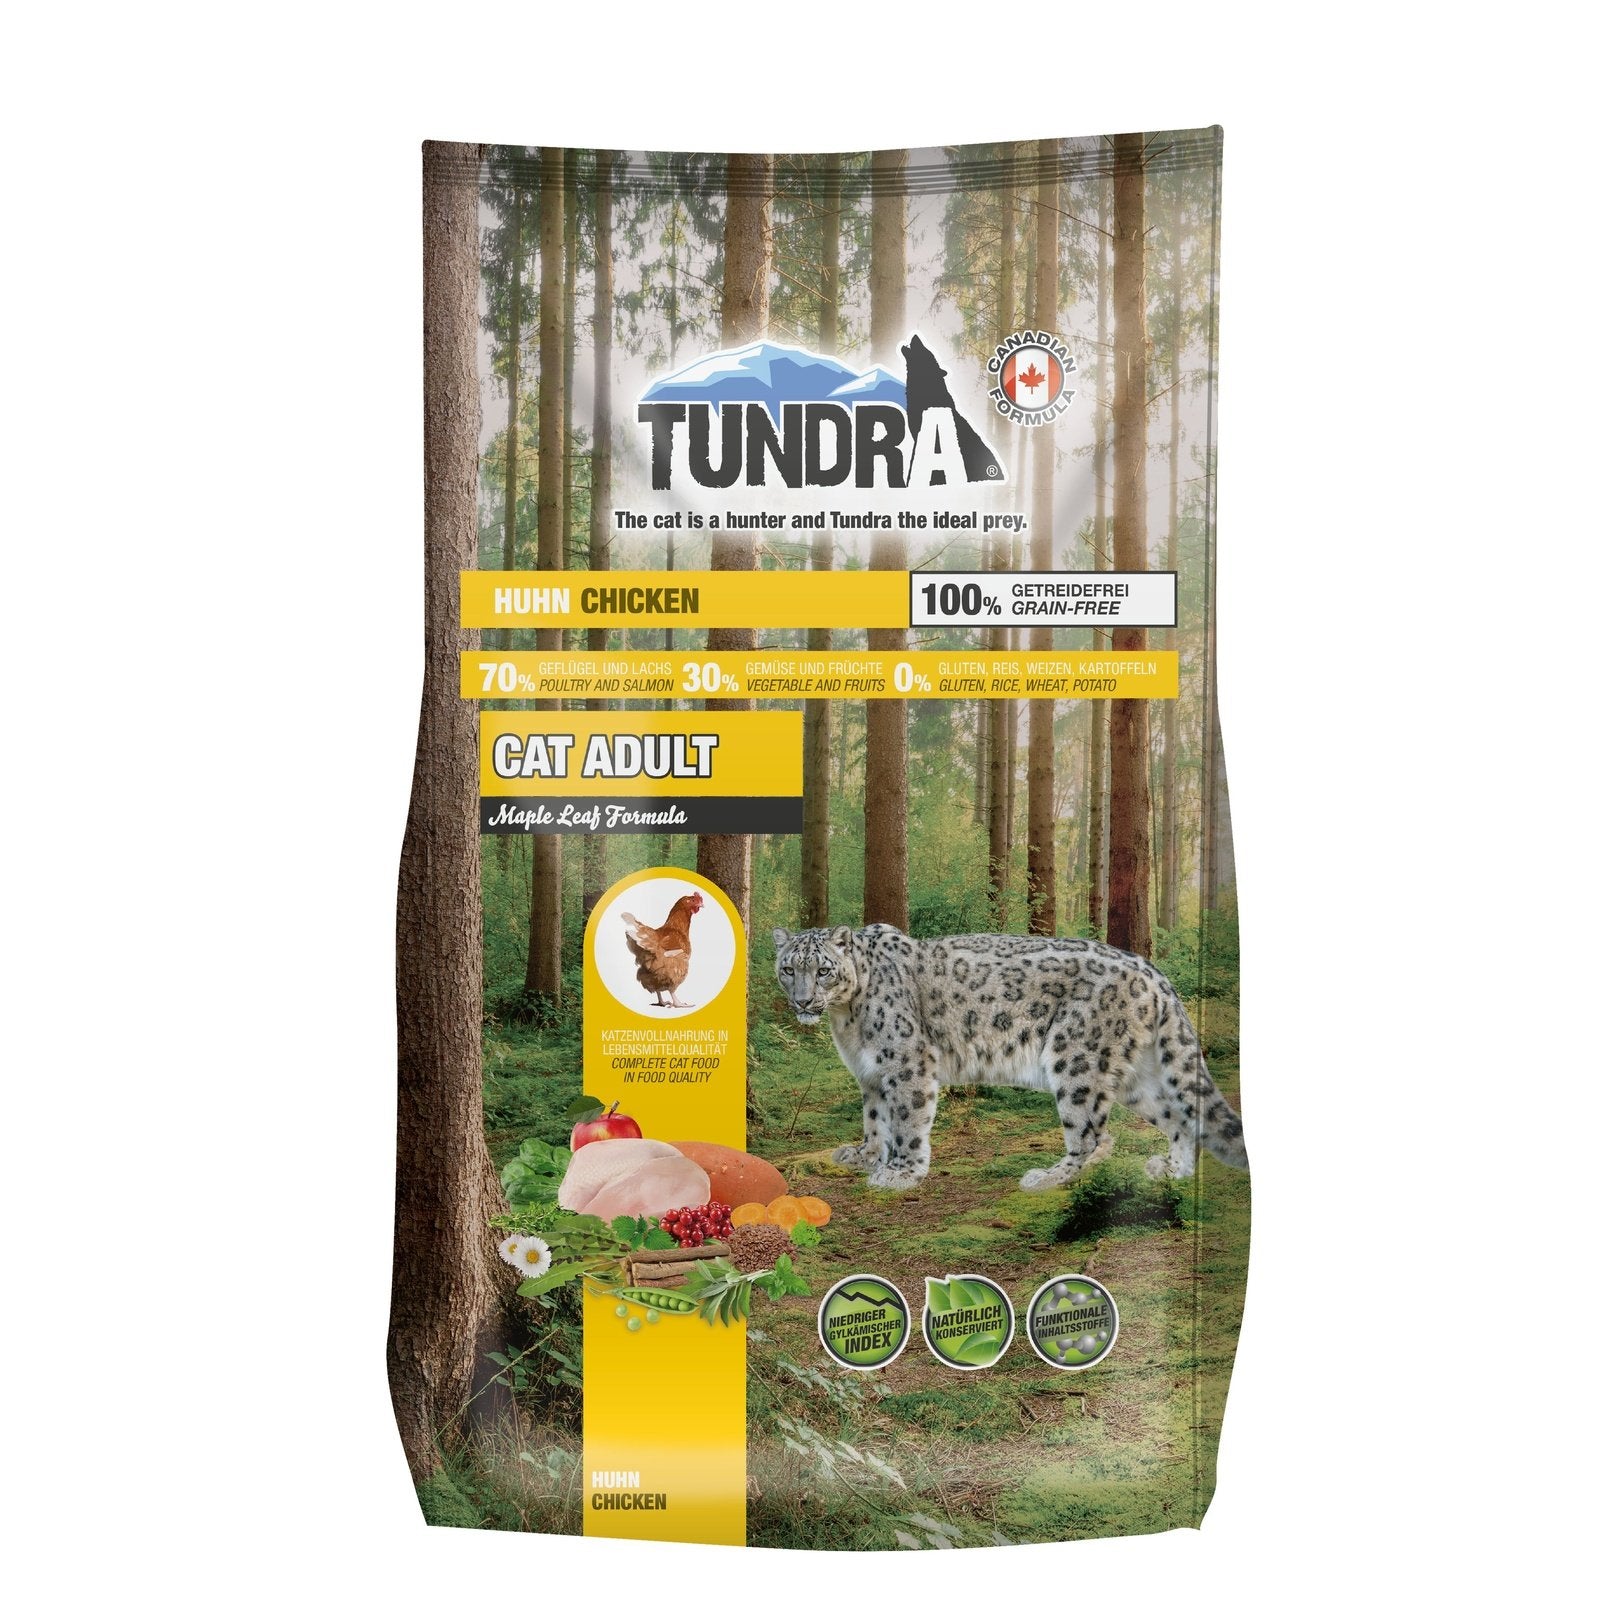 Artikel mit dem Namen Tundra Katze Chicken Trockenfutter im Shop von zoo.de , dem Onlineshop für nachhaltiges Hundefutter und Katzenfutter.